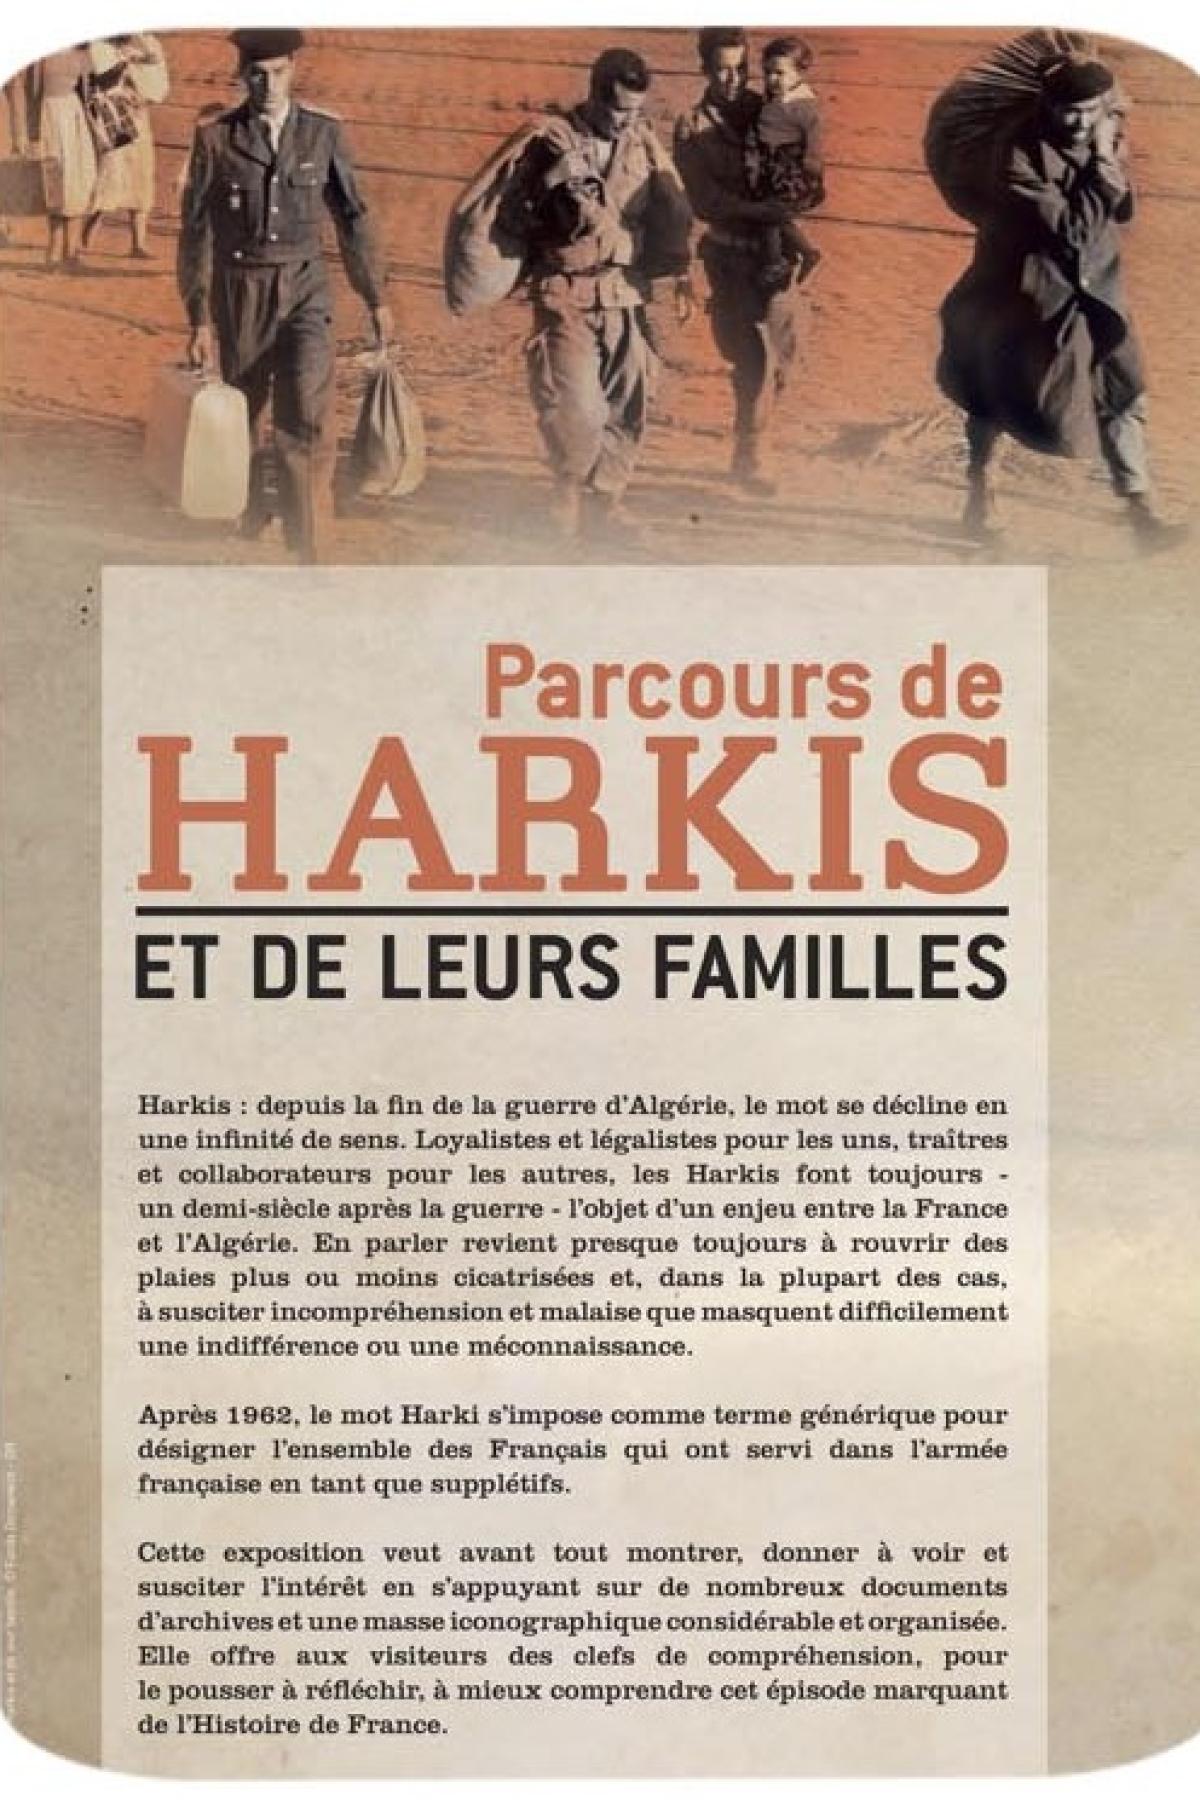 Affiche de l'ONaCVG présentant l'exposition Parcours de Harkis et de leurs familles